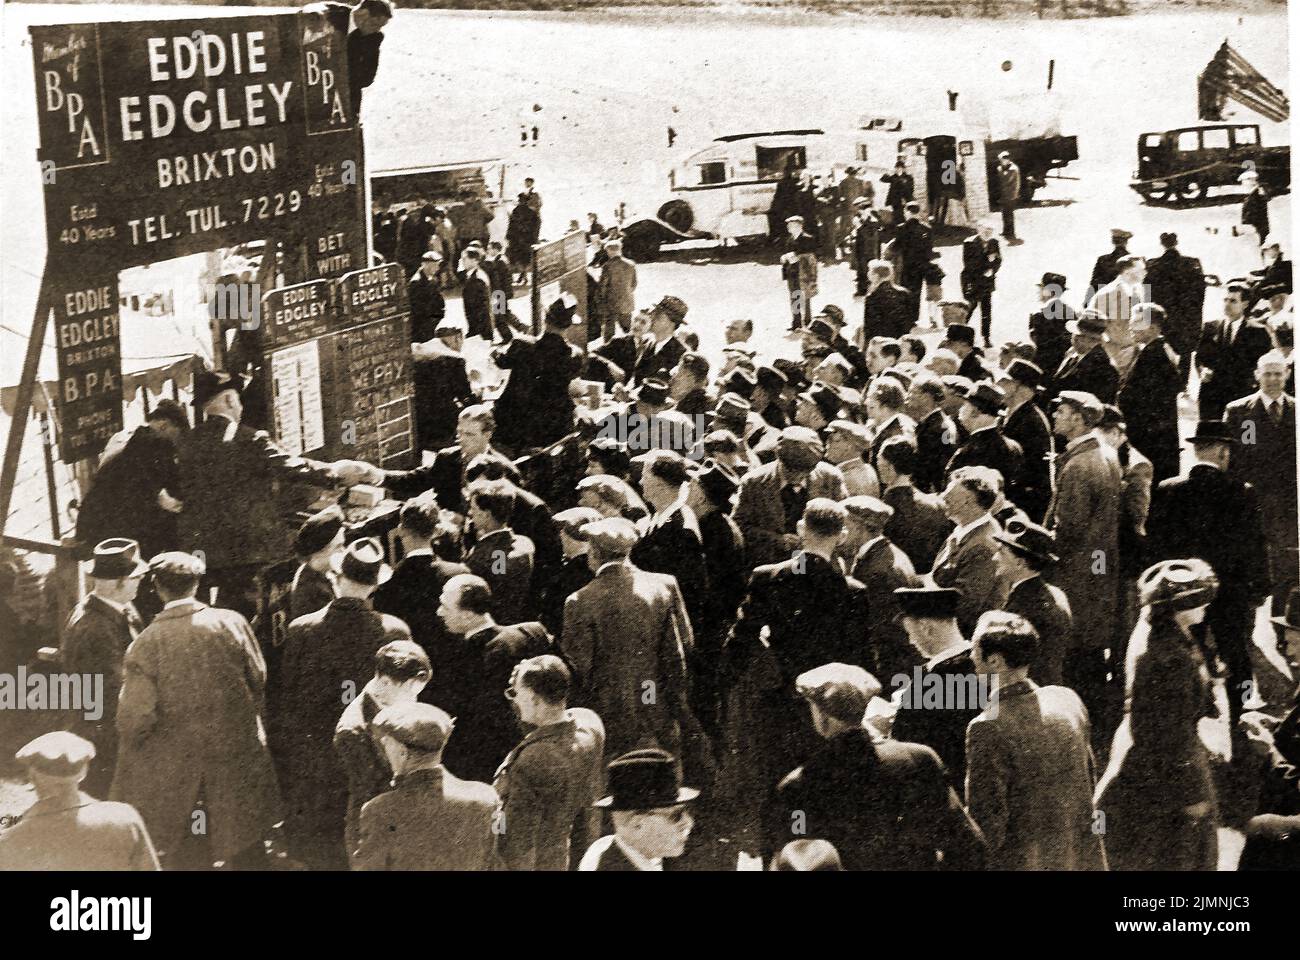 Ein altes Foto des Buchmacherers Eddie Edgley aus Brixton, der bei Epsom racecourse.jpg Wetten abnahm Stockfoto